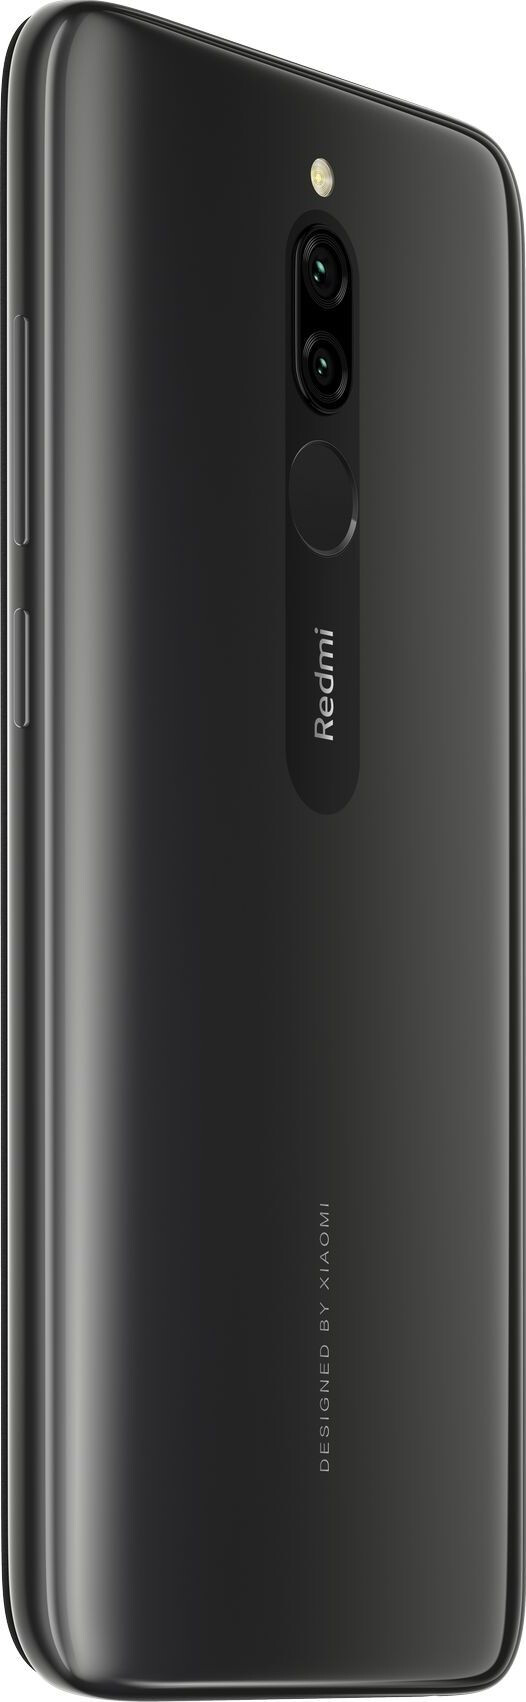 Xiaomi Redmi 8 Onyx